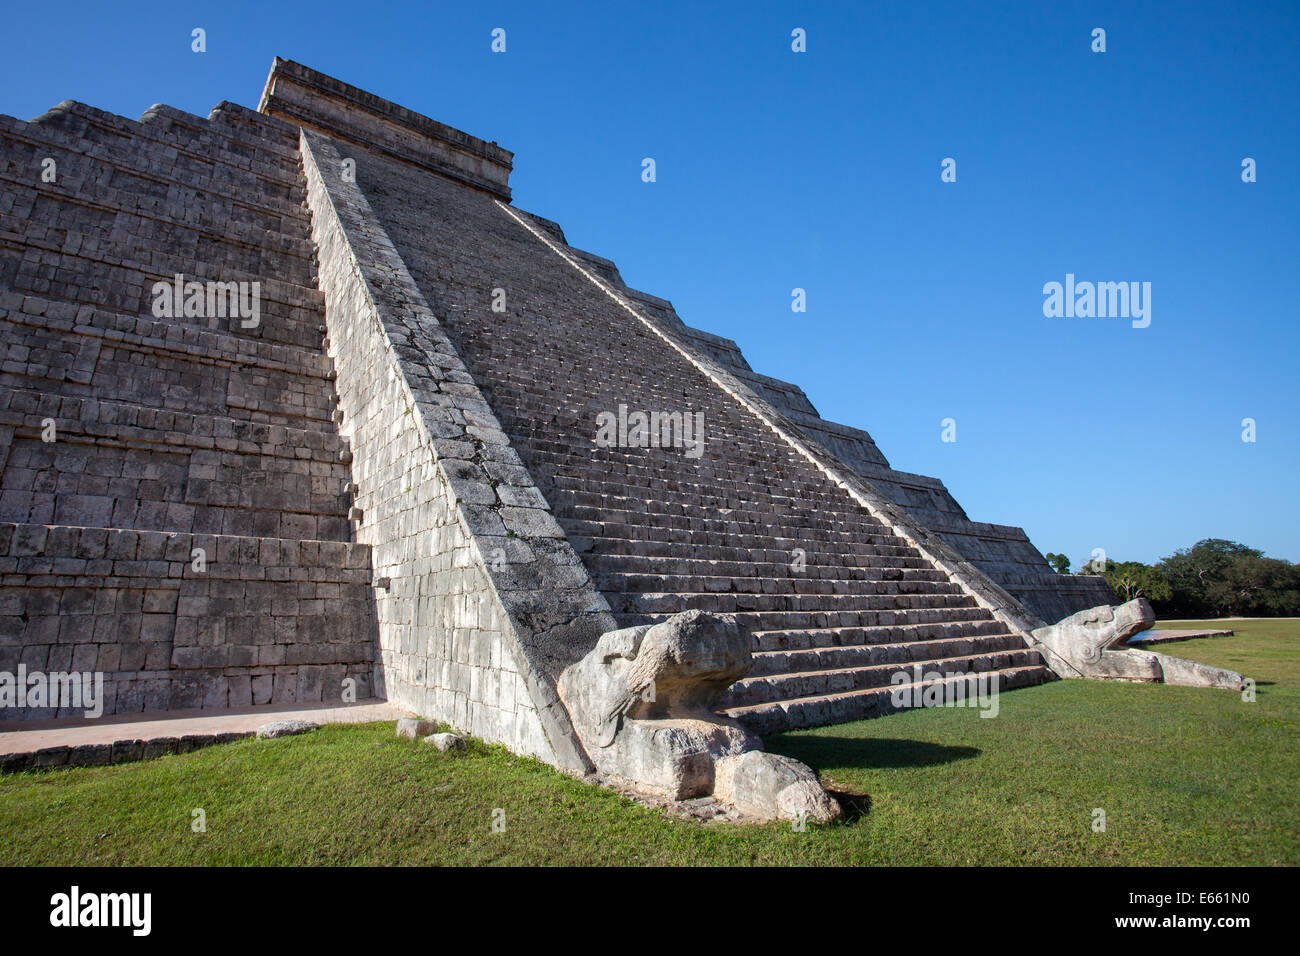 The stairs of El Castillo pyramid in Chichen-Itza, Yucatan, Mexico. Stock Photo